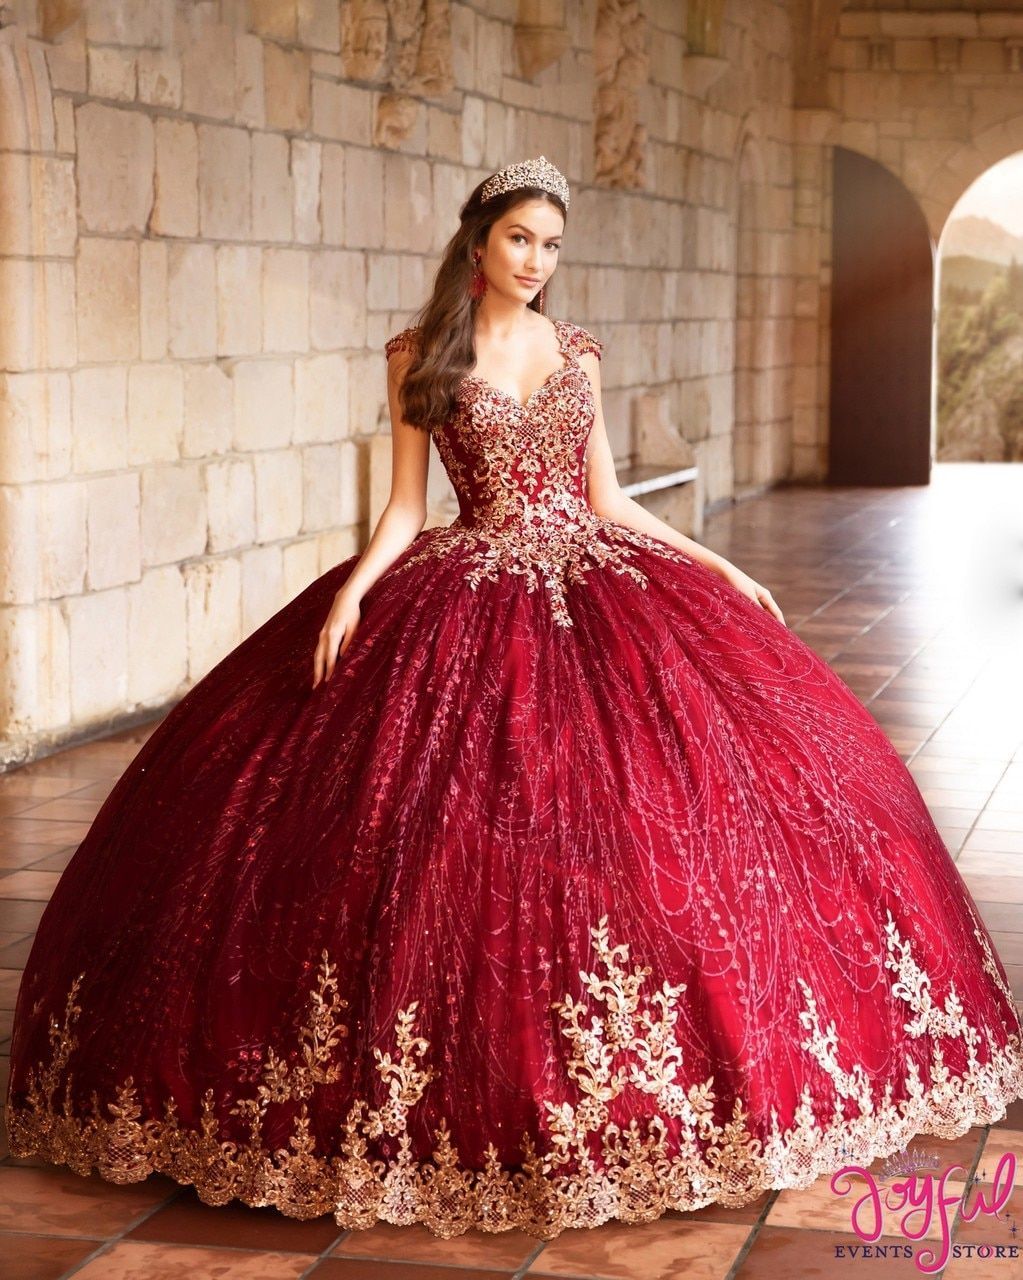 15 dress Quinceanera burgundy ideas